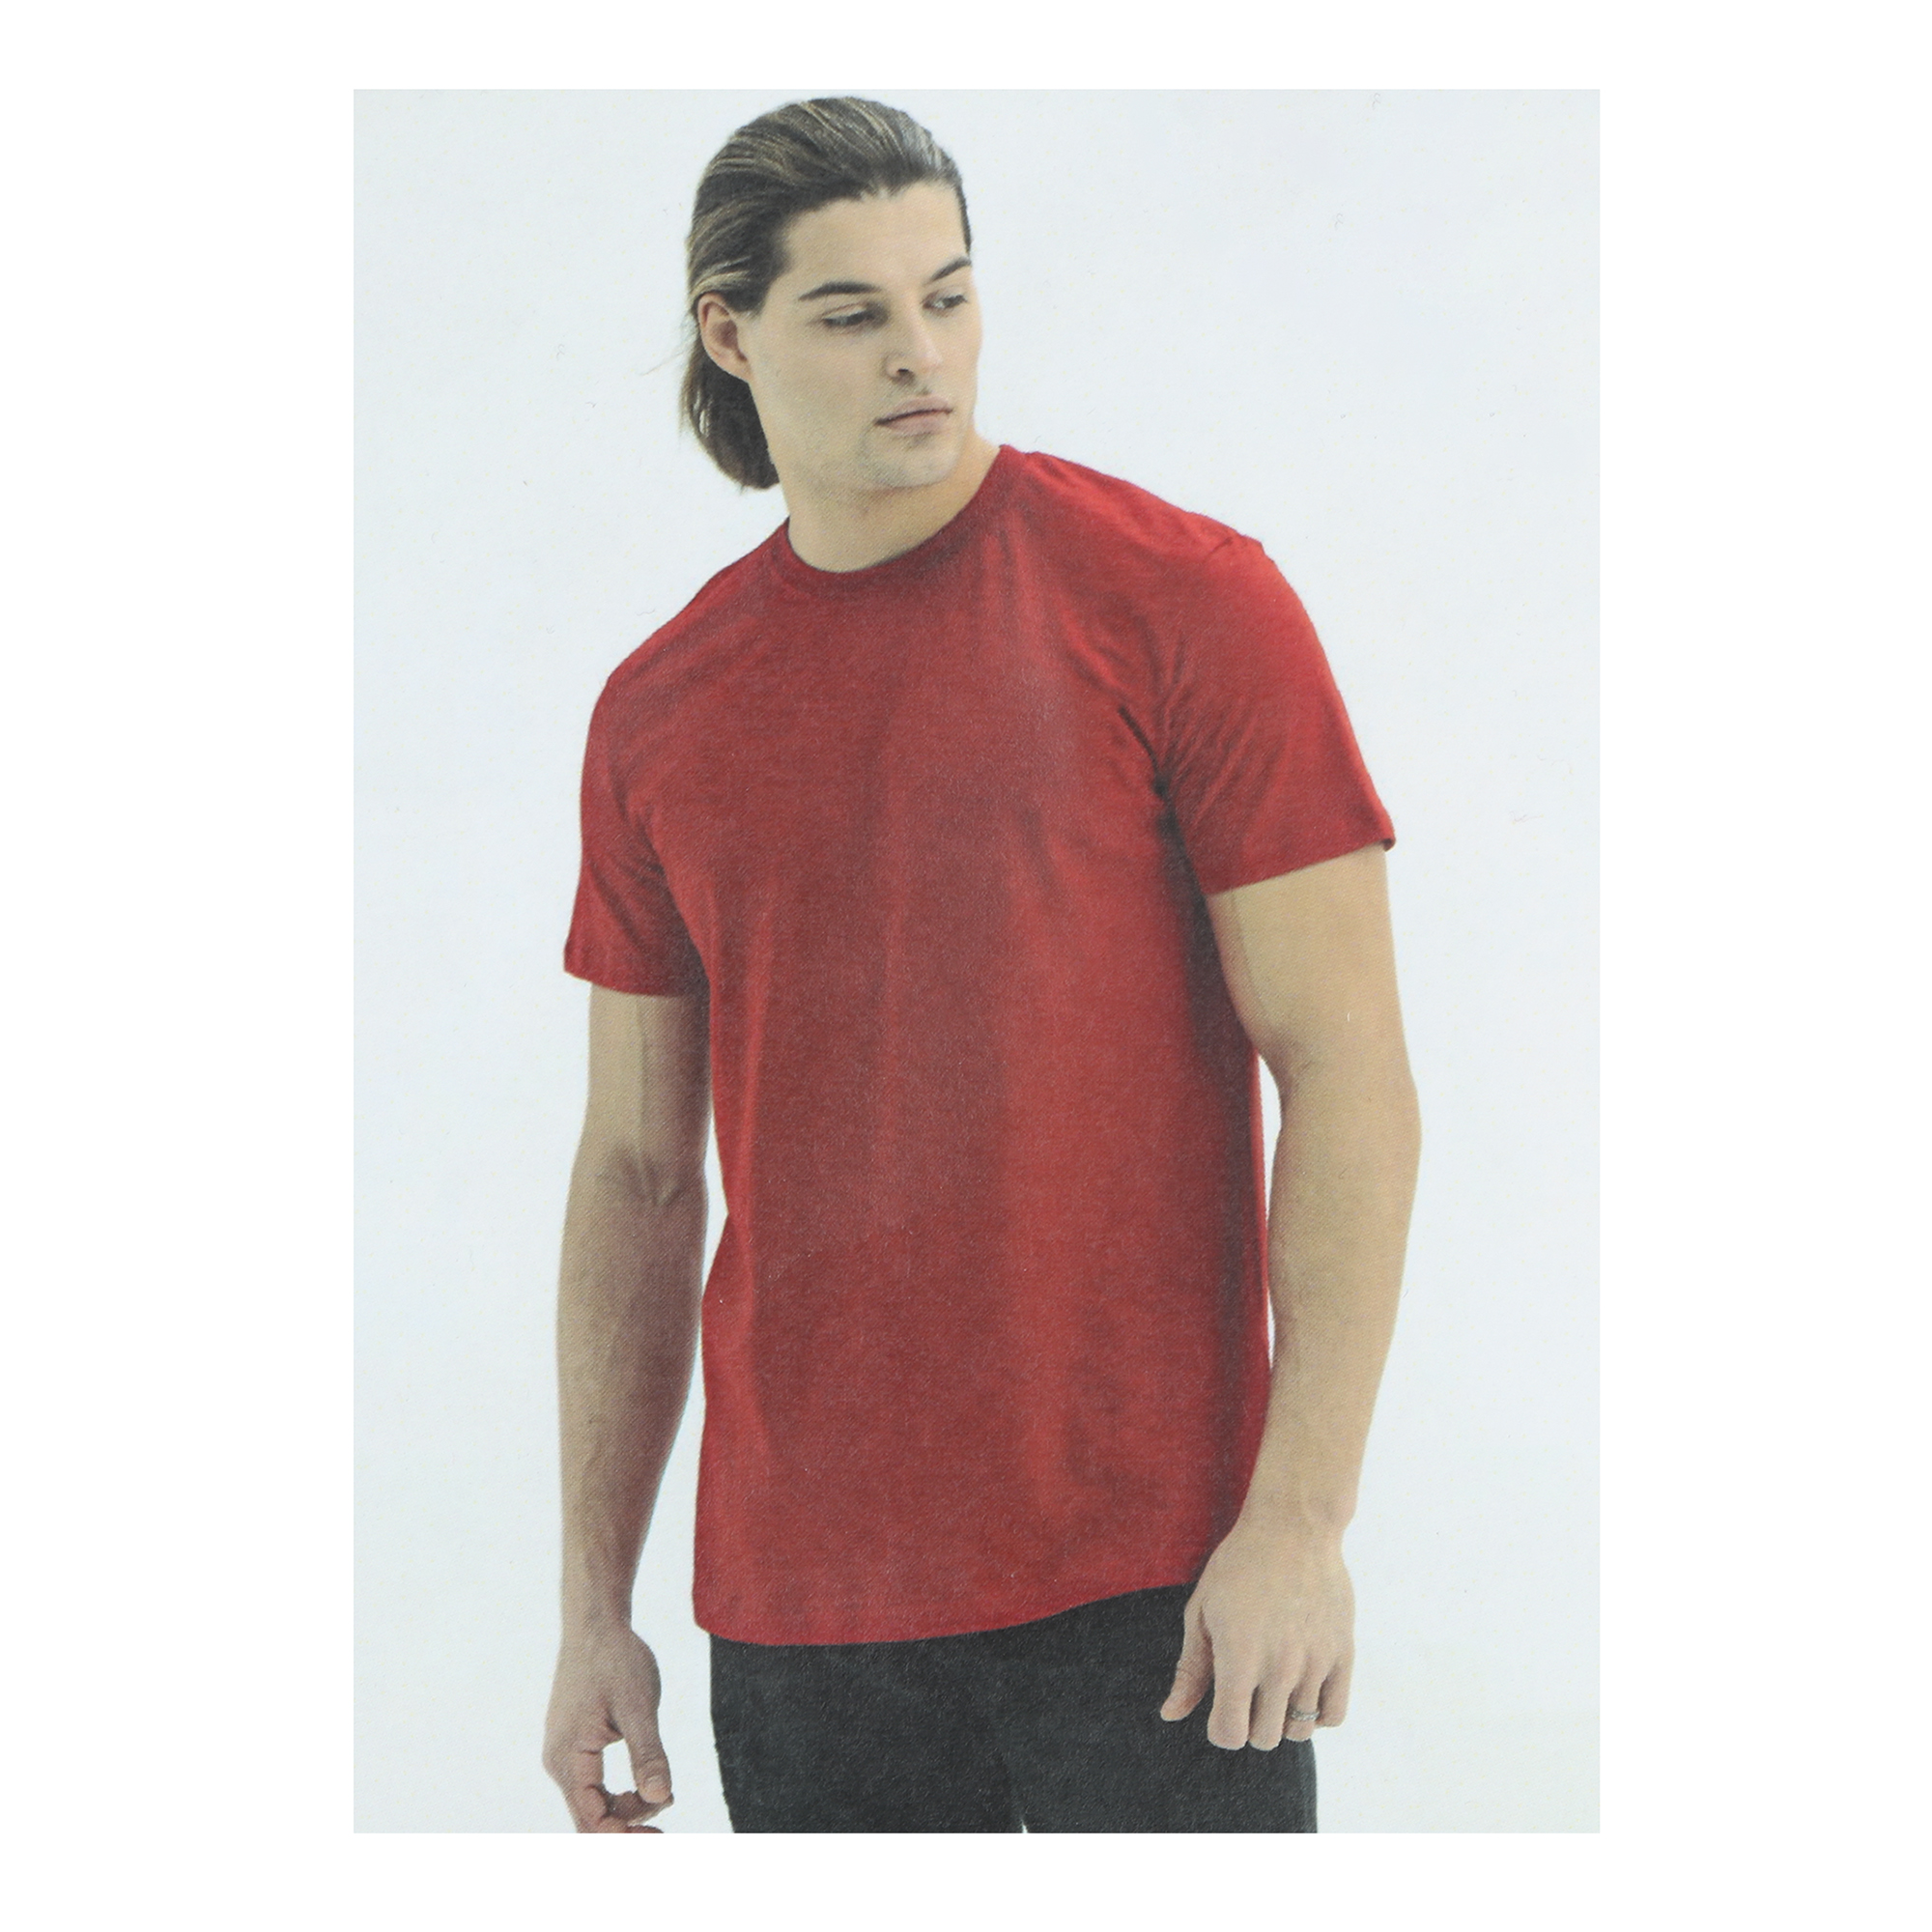 Мужская футболка Pantelemone MF-913 48 красная, цвет красный, размер 48 - фото 5